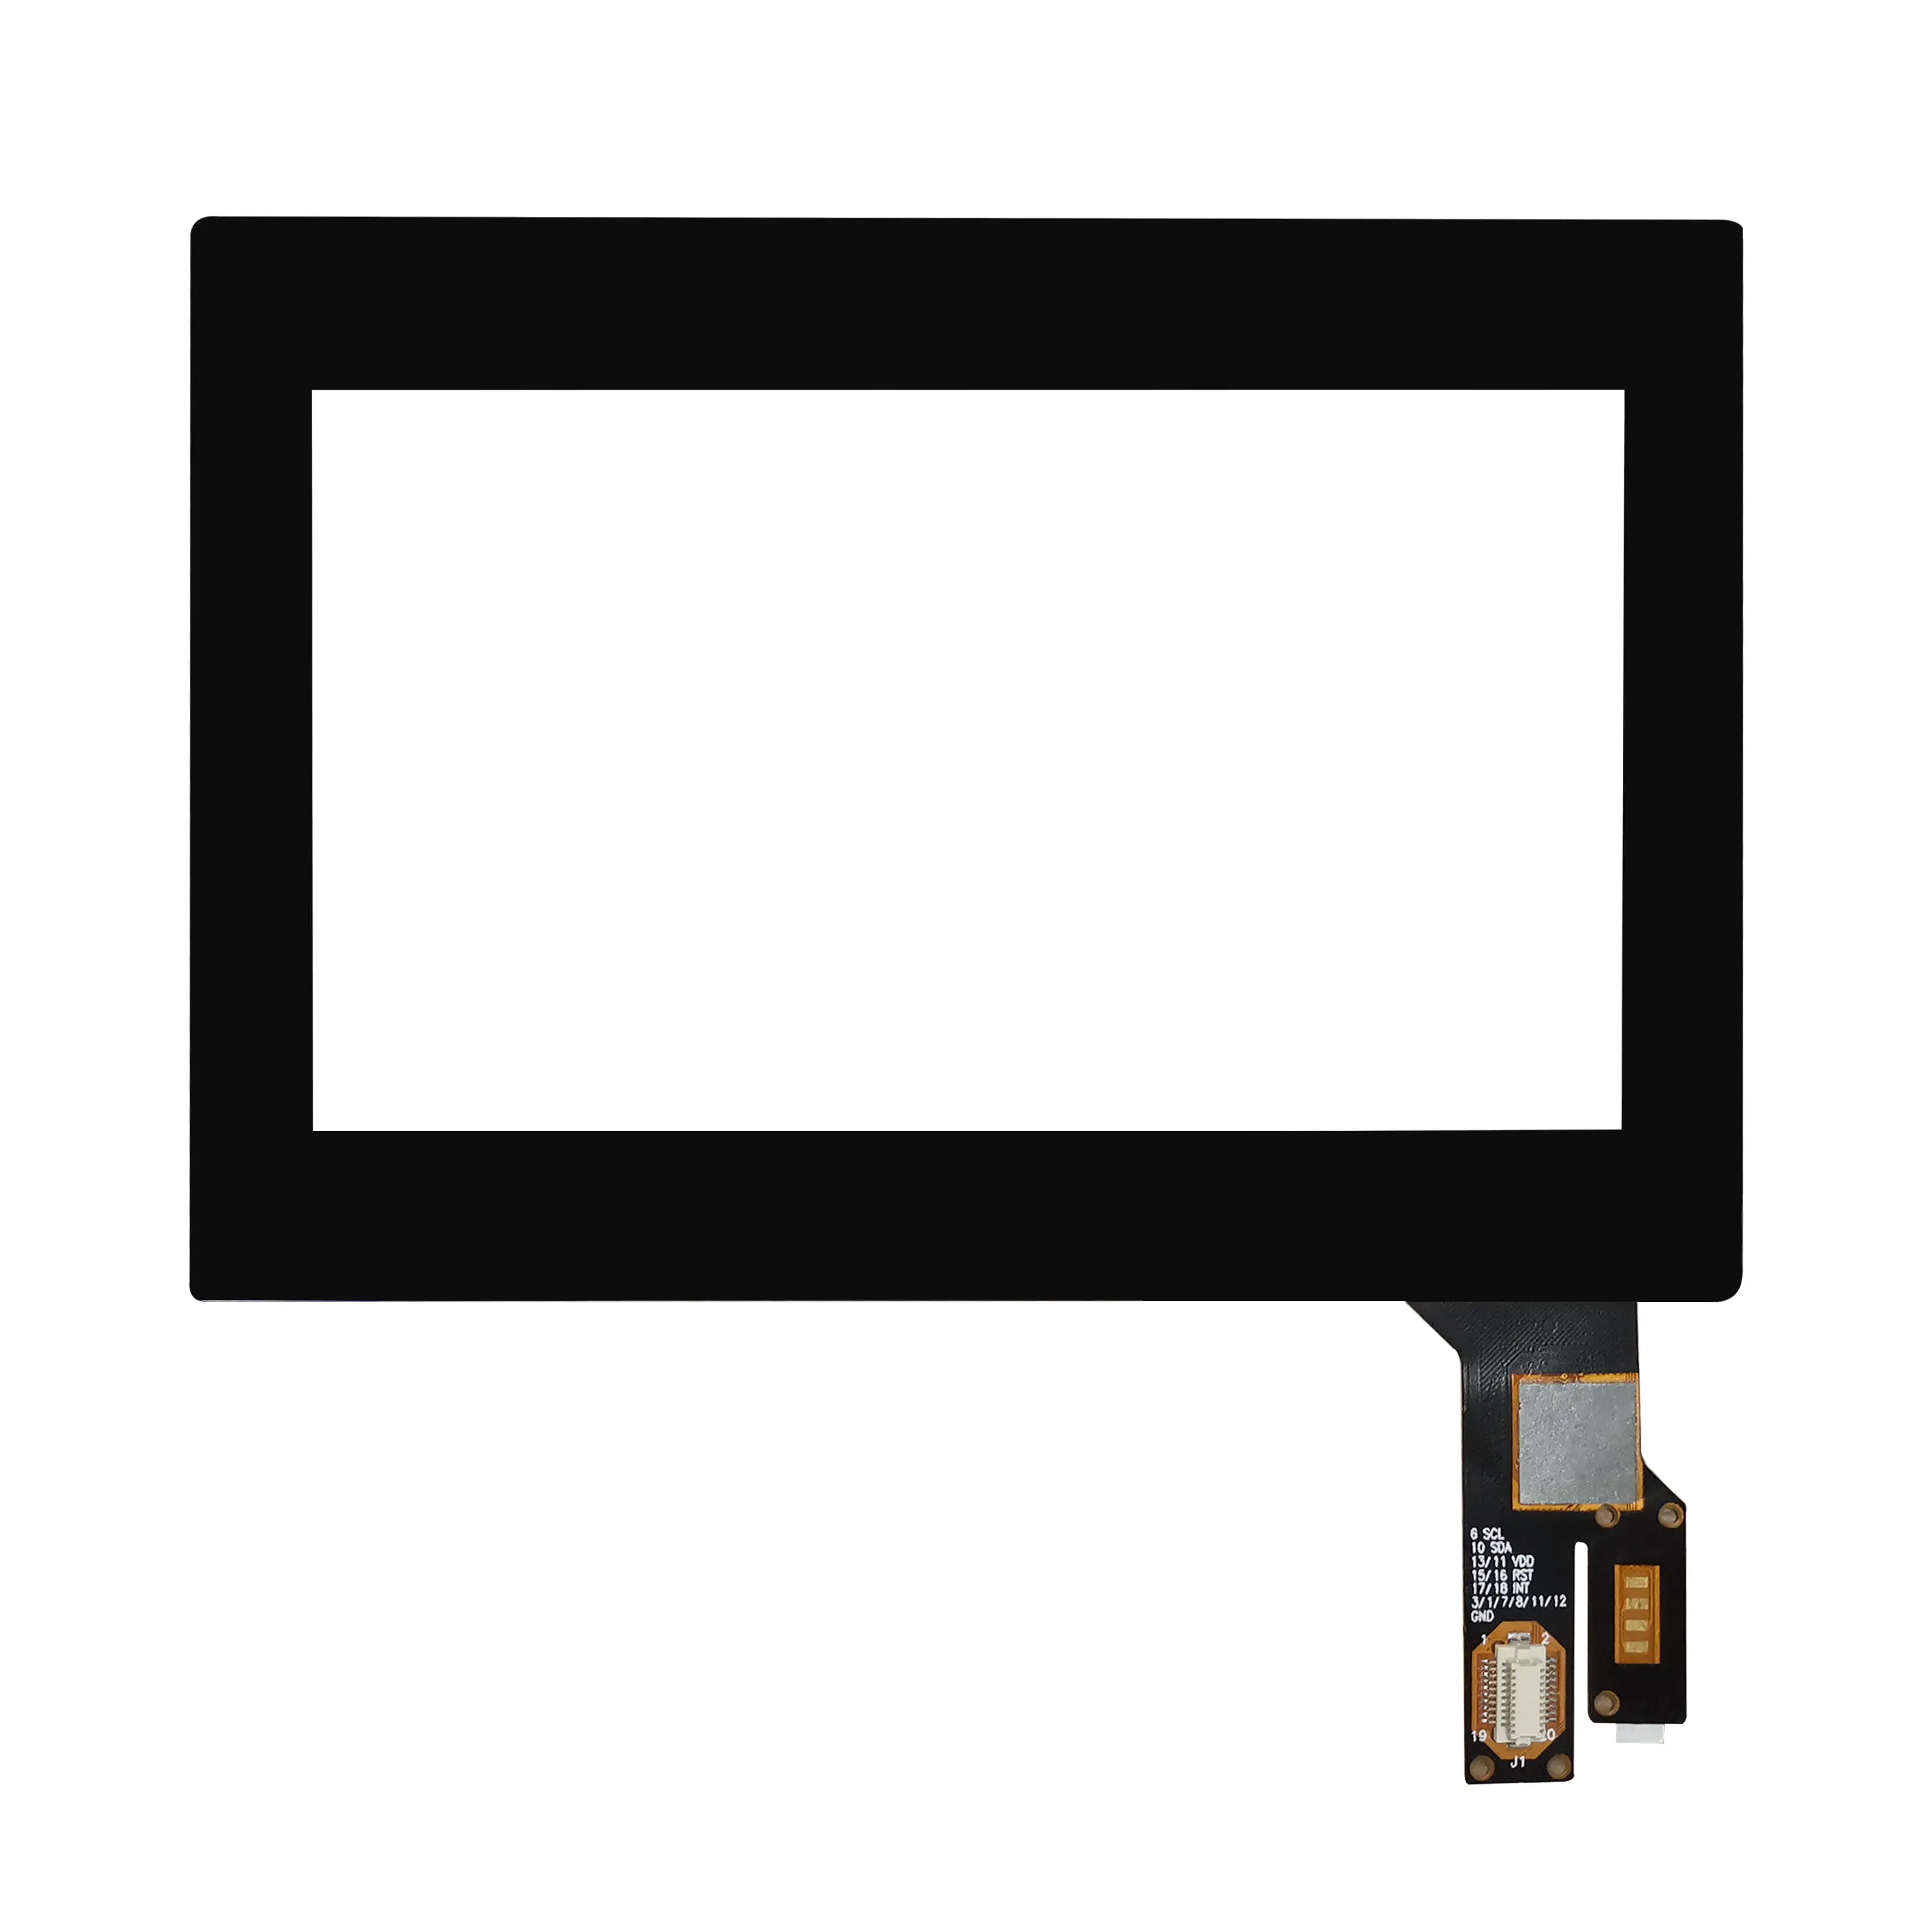 Superpositions de panneaux d'écran tactile capacitif multi-touch personnalisé de petite taille de 4.3 pouces avec Focaltech Goodix ILITEK